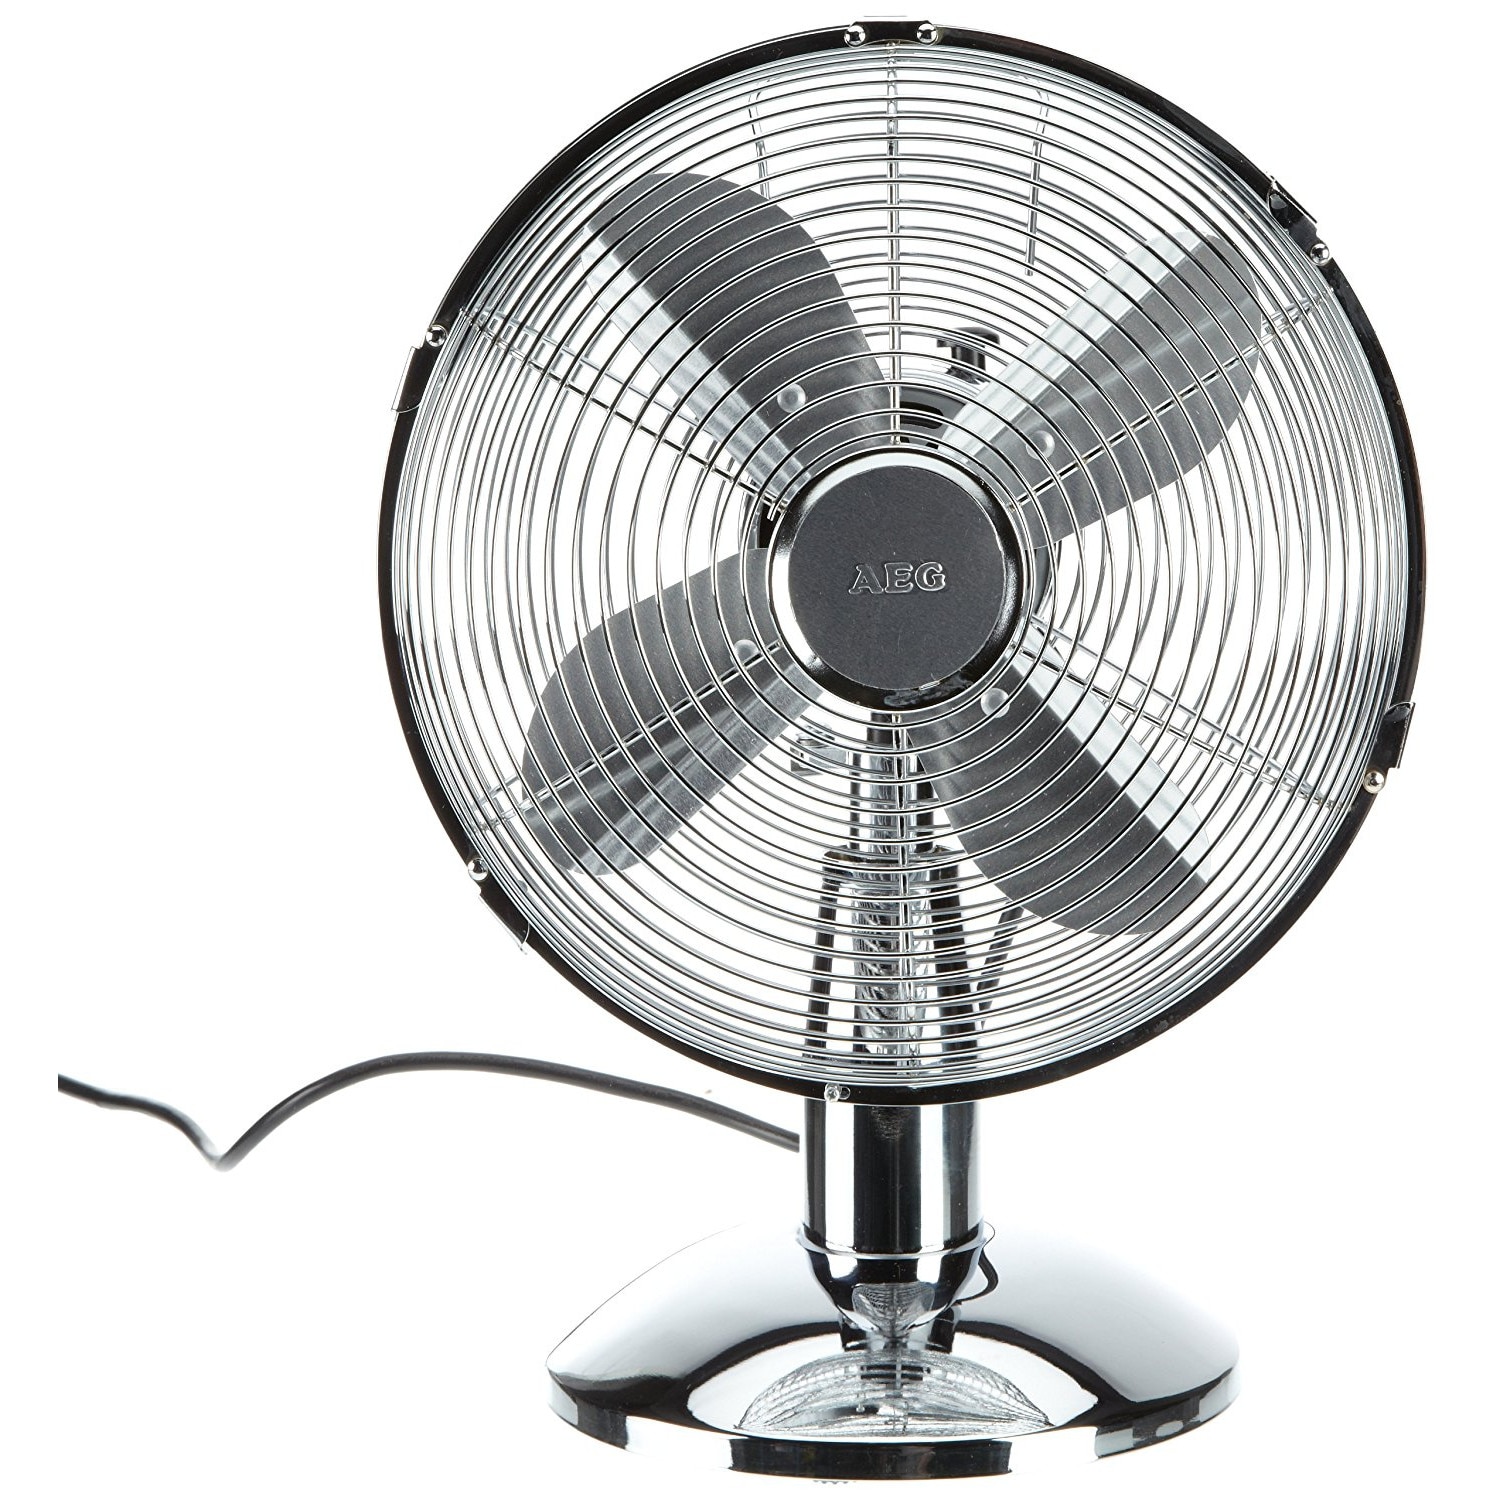 Какой вентилятор лучше купить. Вентилятор AEG 1908. Вентилятор настольный Holland 49607 вентилятор 3in1 16.3cm. Вентилятор Alpina Table Fan. Вентилятор настольный AEG.